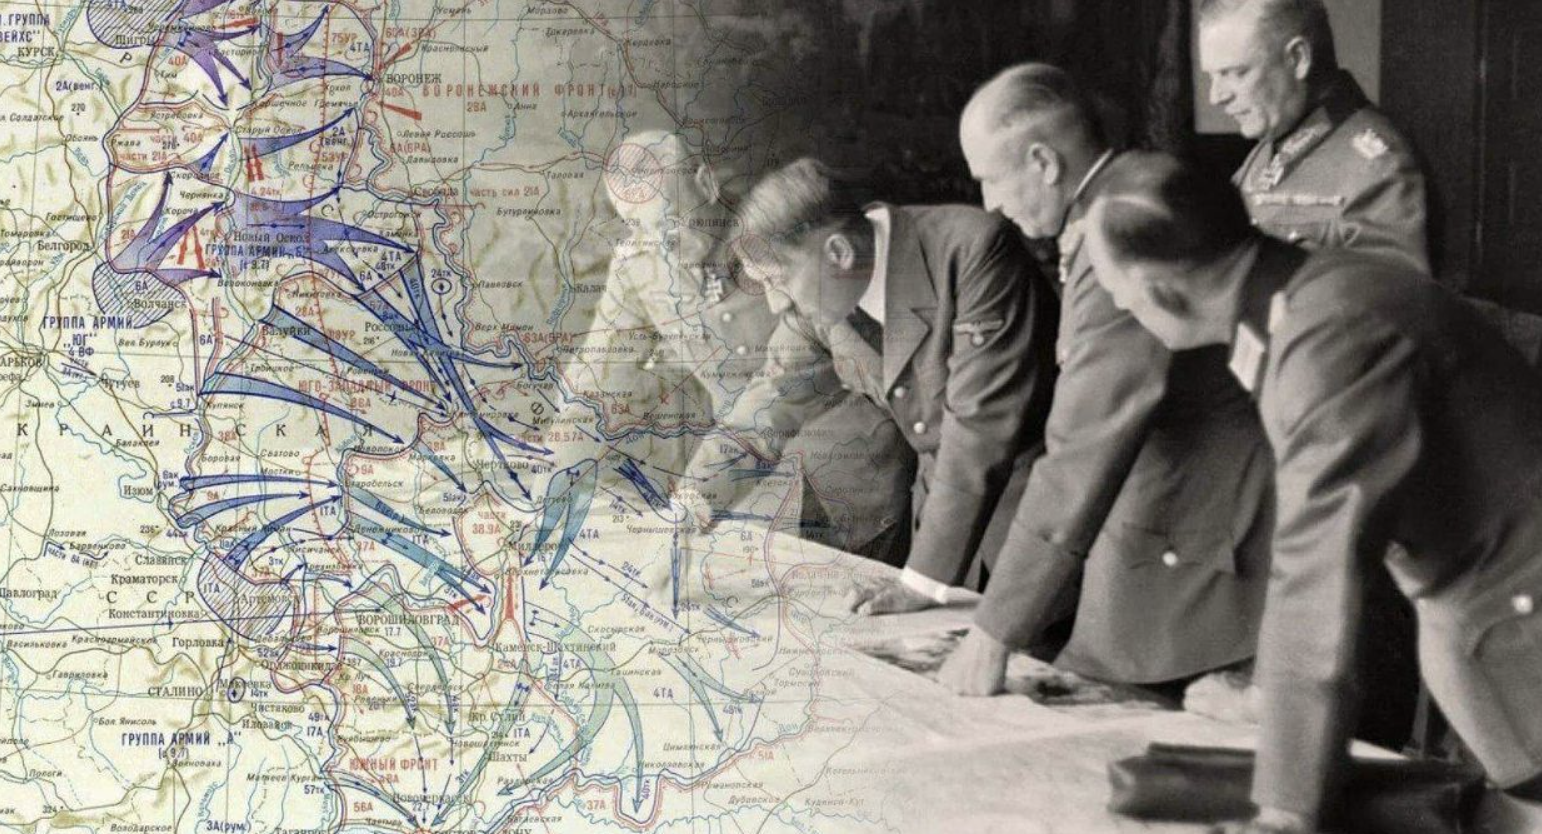 Операция барбаросса была. Карта второй мировой войны план Барбаросса. Карта плана Барбаросса 1941.